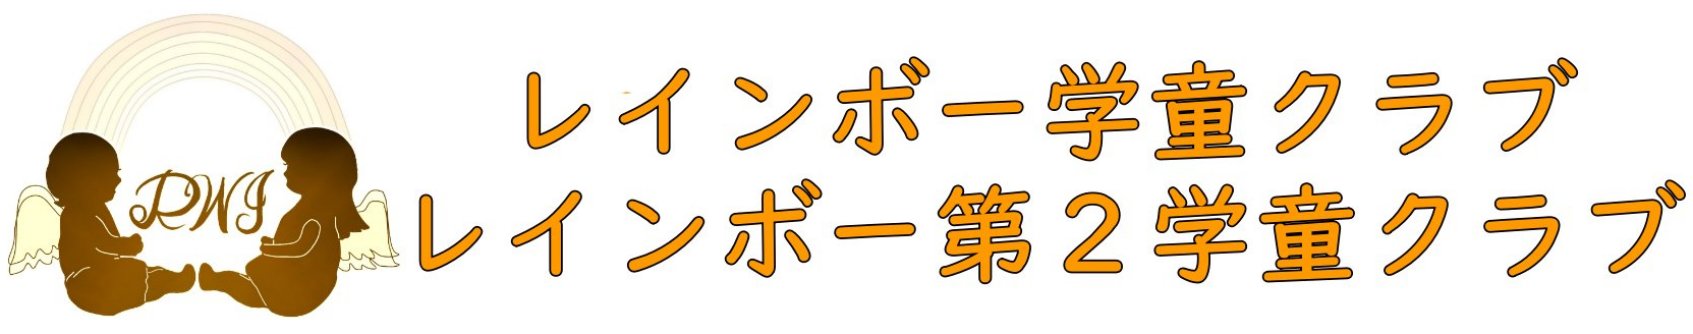 gakudou_logo1.jpg